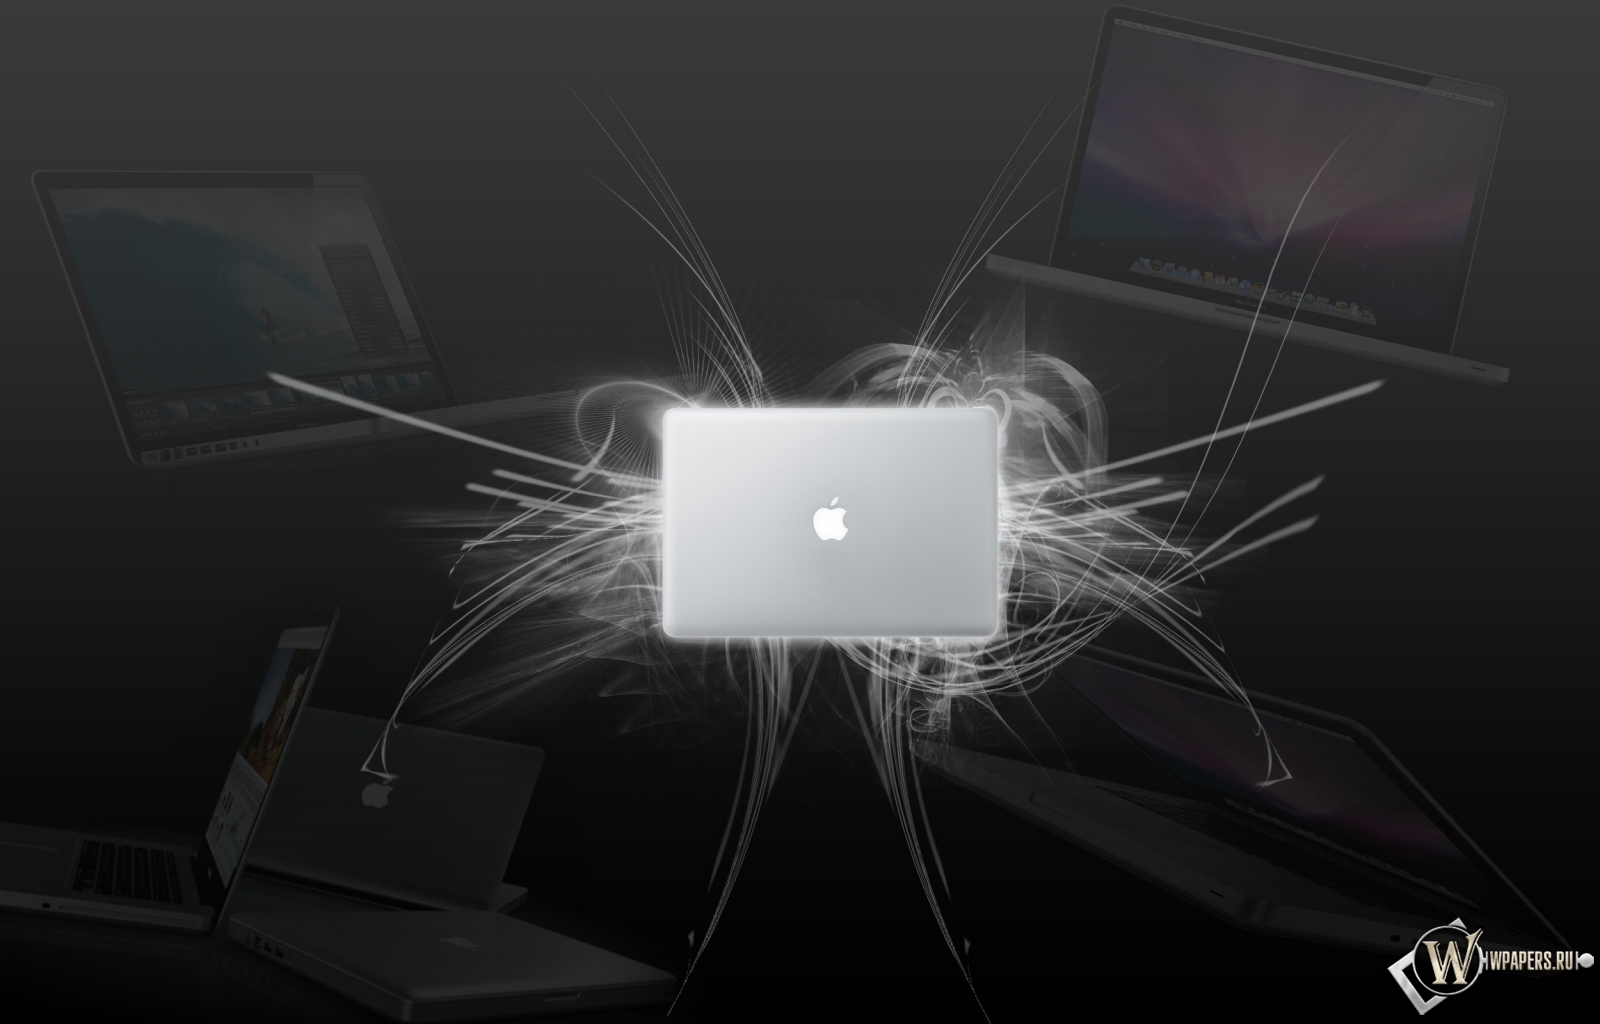 MacBook wallpaper 1600x1024